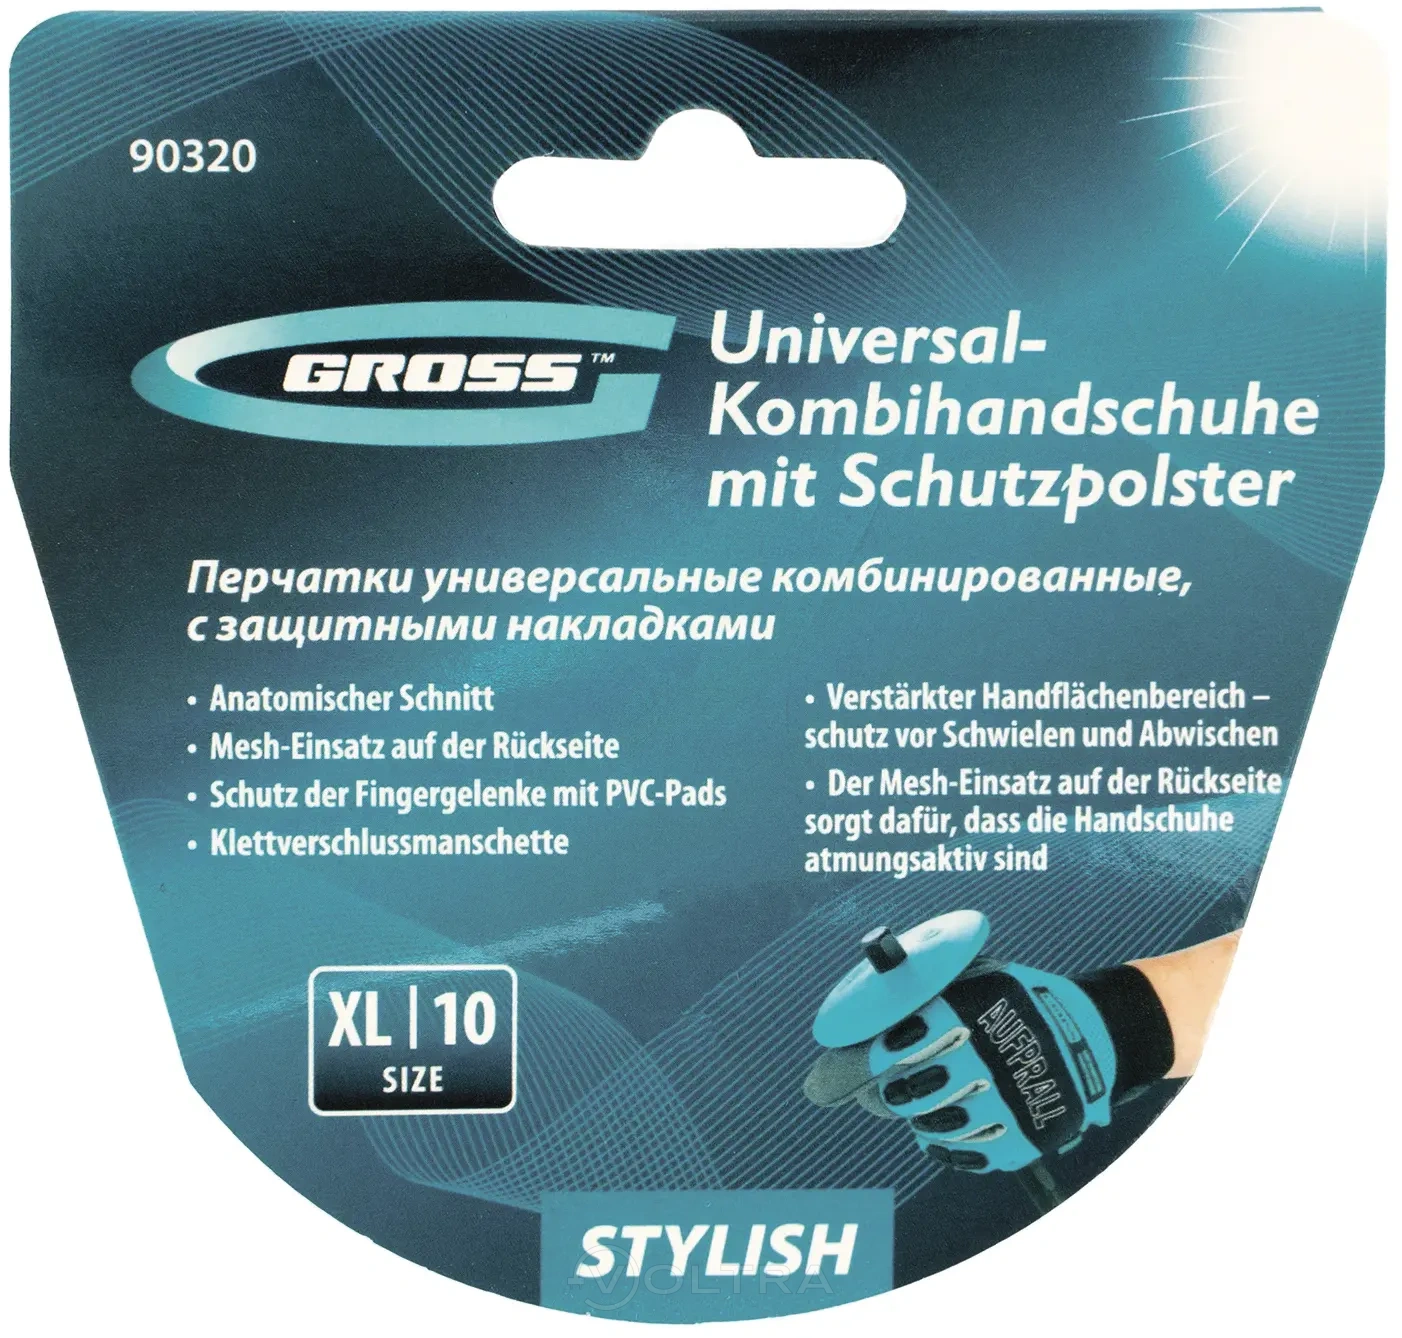 Перчатки универсальные комбинированные с защитными накладками STYLISH размер XL (10) Gross (90320)